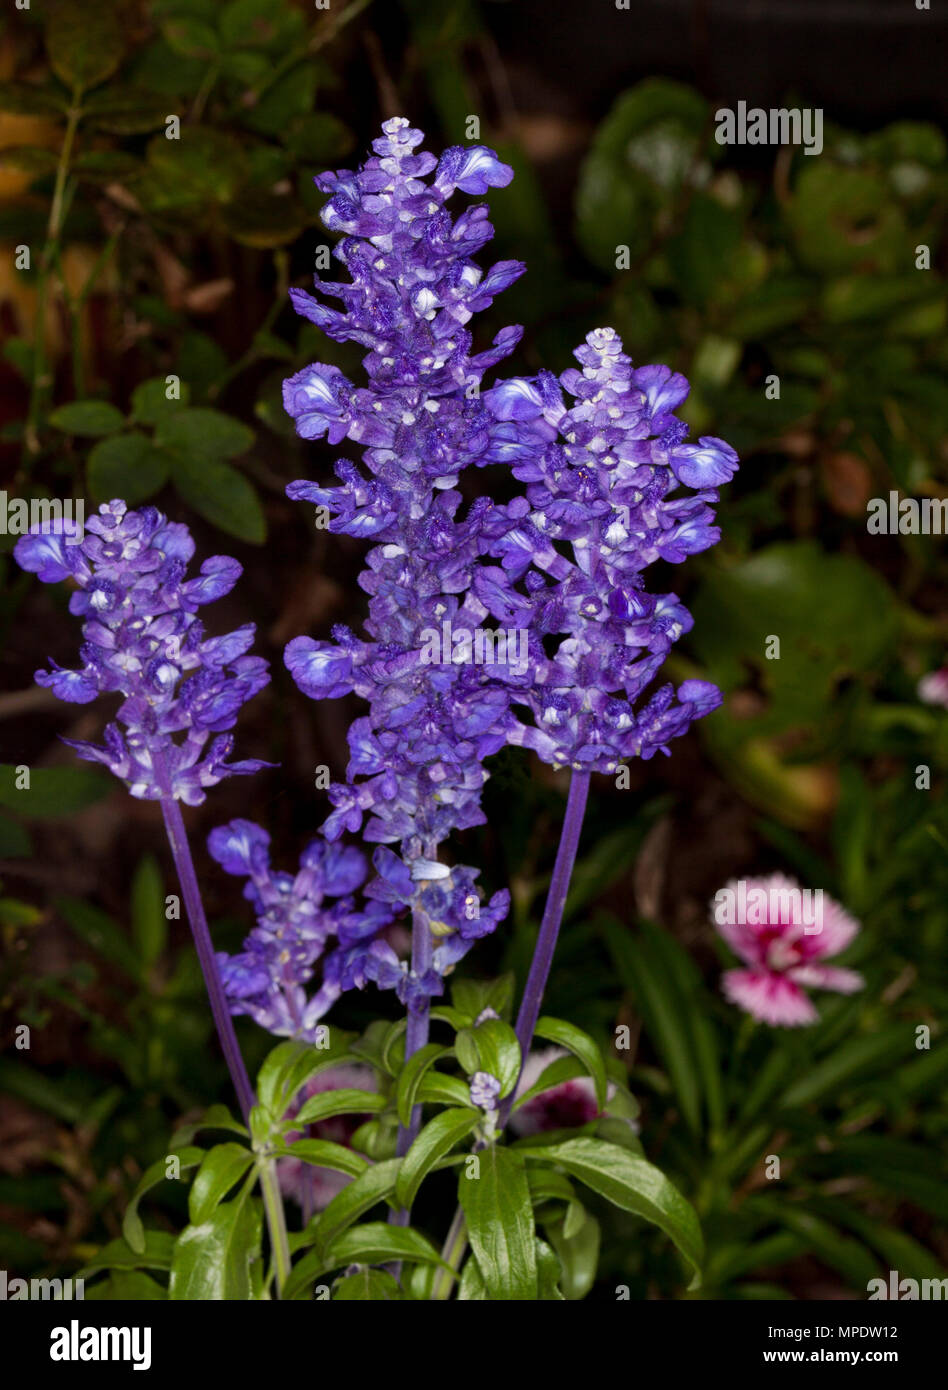 Spikes der tiefen blauen/violetten Blumen und grüne Blätter von Salvia farinacea allyfun', eine mehrjährige Pflanze auf dunklem Hintergrund Stockfoto